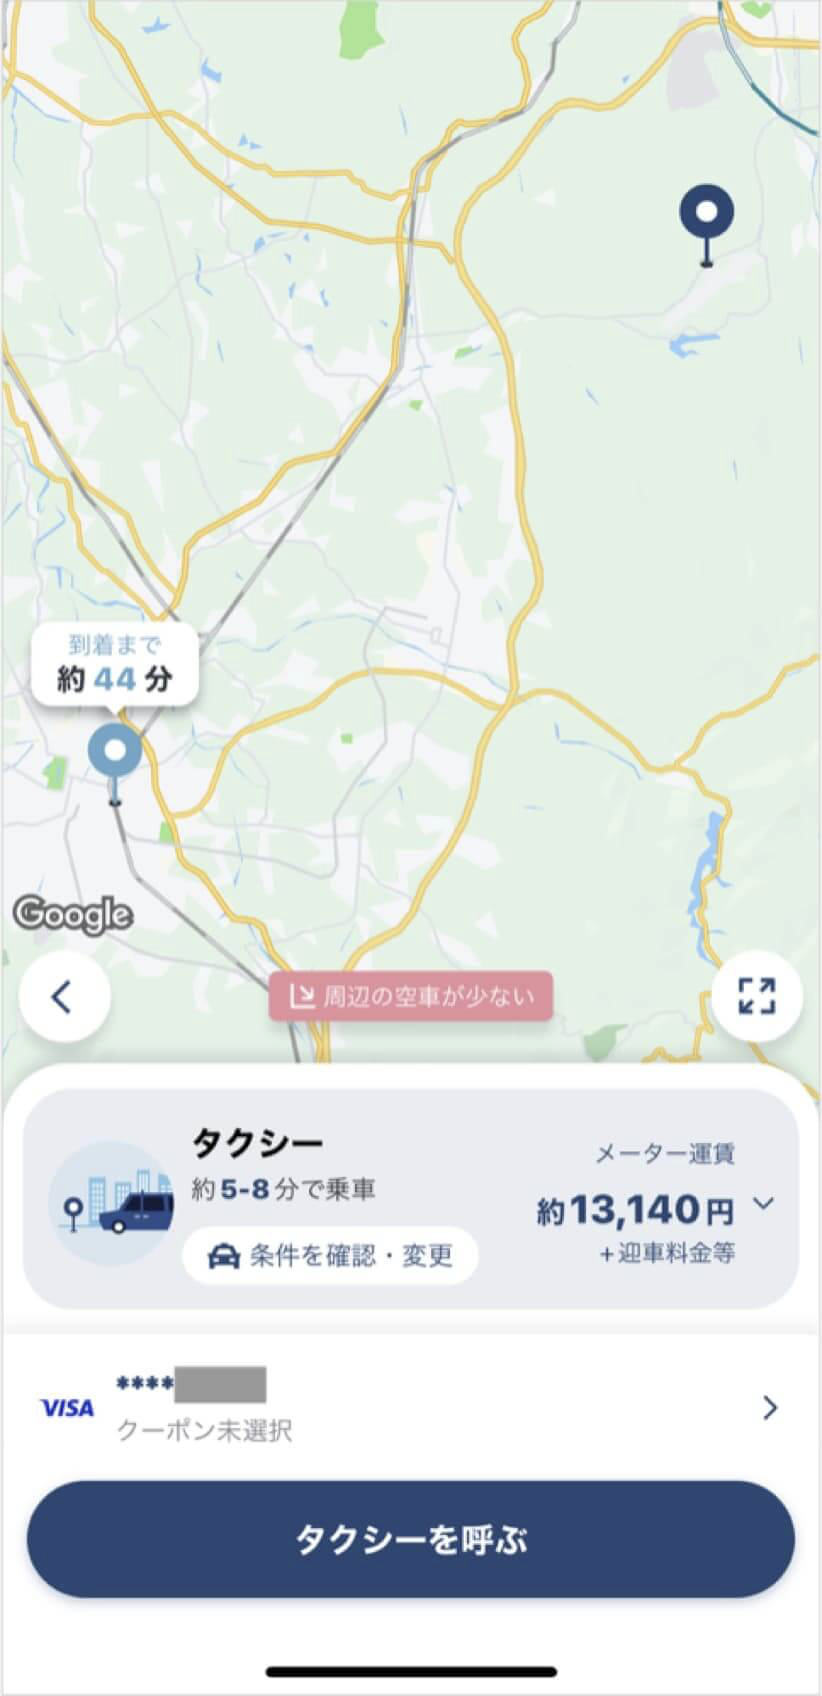 青森空港から弘前駅までのタクシー料金・所要時間まとめ